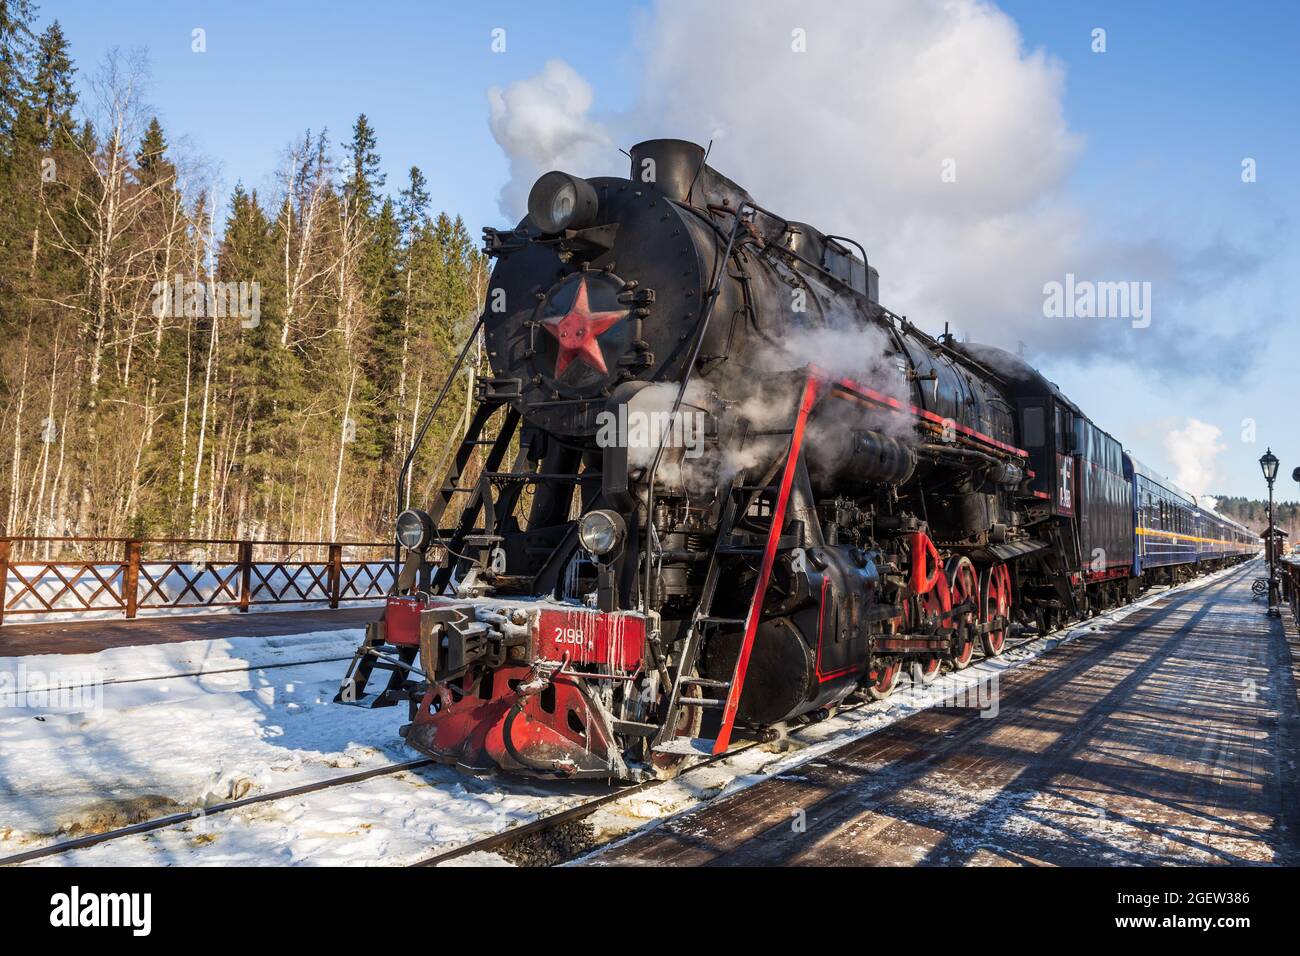 RUSKEALA, RUSSIE - 10 MARS 2021 : le train rétro touristique Ruskeala Express avec locomotive à vapeur part de la gare de Ruskeala Banque D'Images